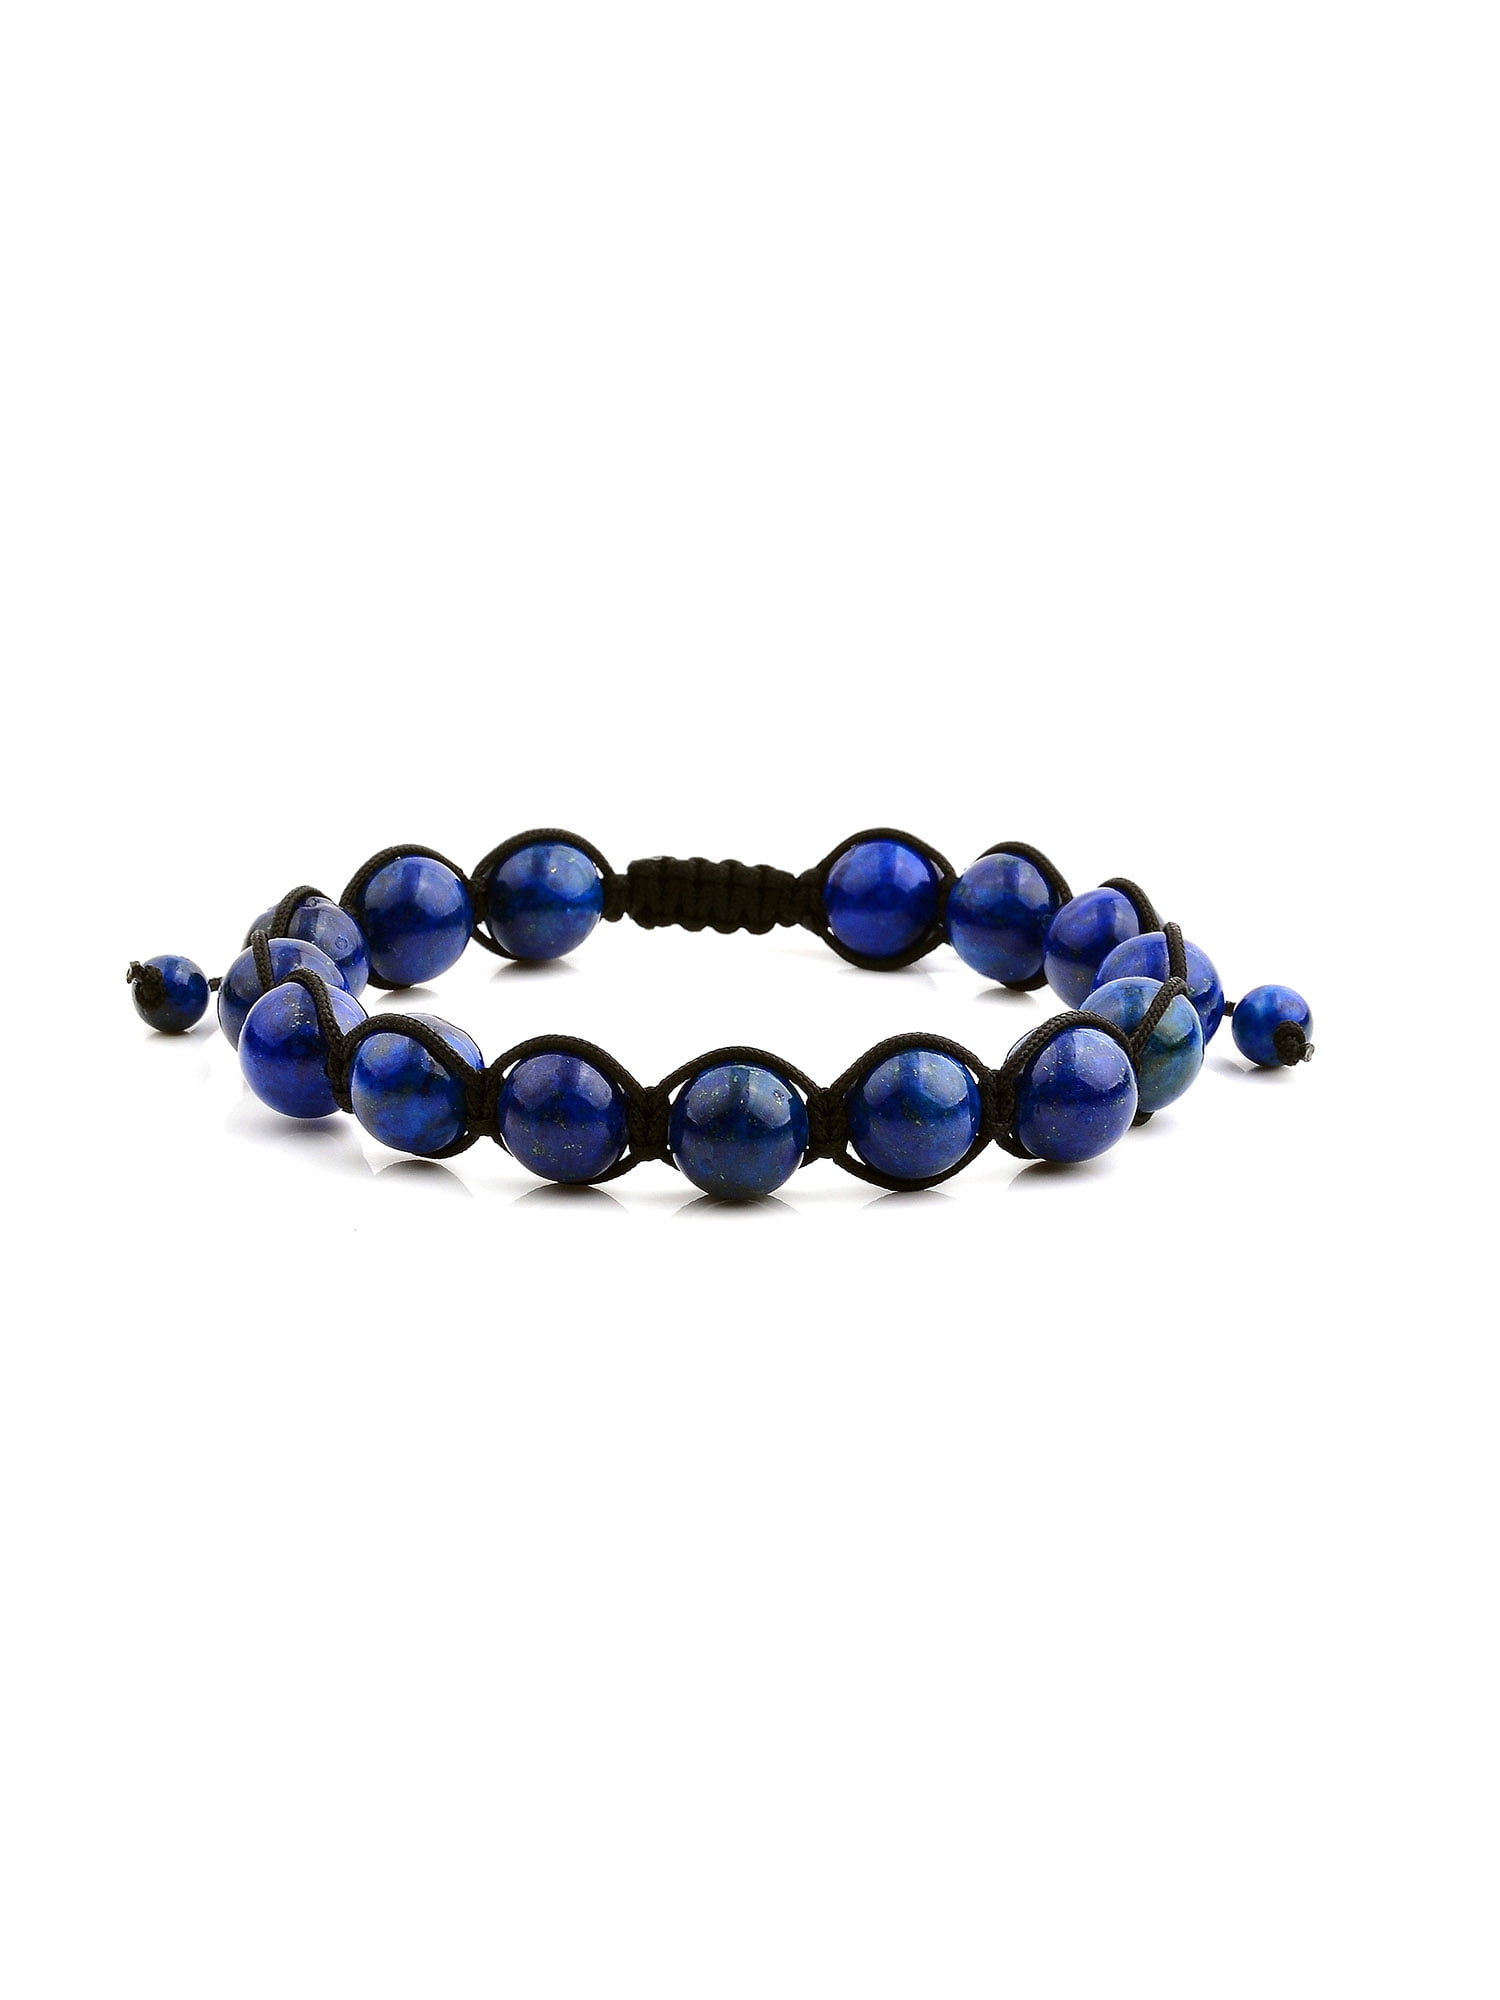 Dyed Genuine Lapis Lazuli Beads Healing Beaded Bracelet 7.5" Stretchy/Adjustale 